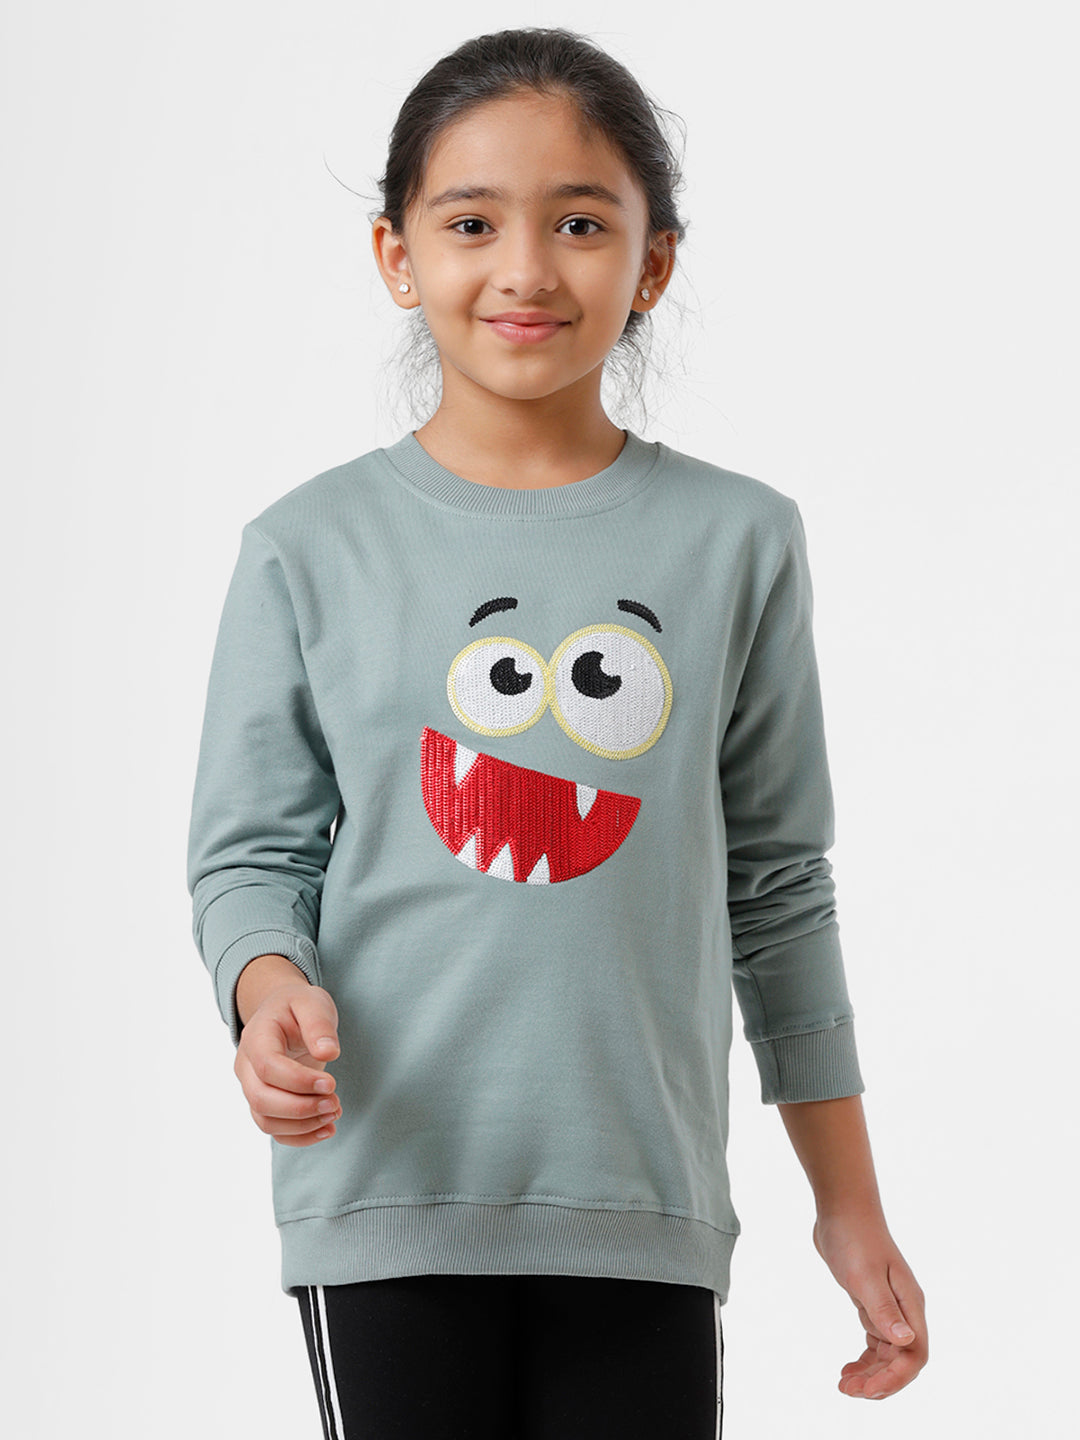 De Moza Kids - Girls Printed Sweat Shirt Cotton Light Petrol - De Moza